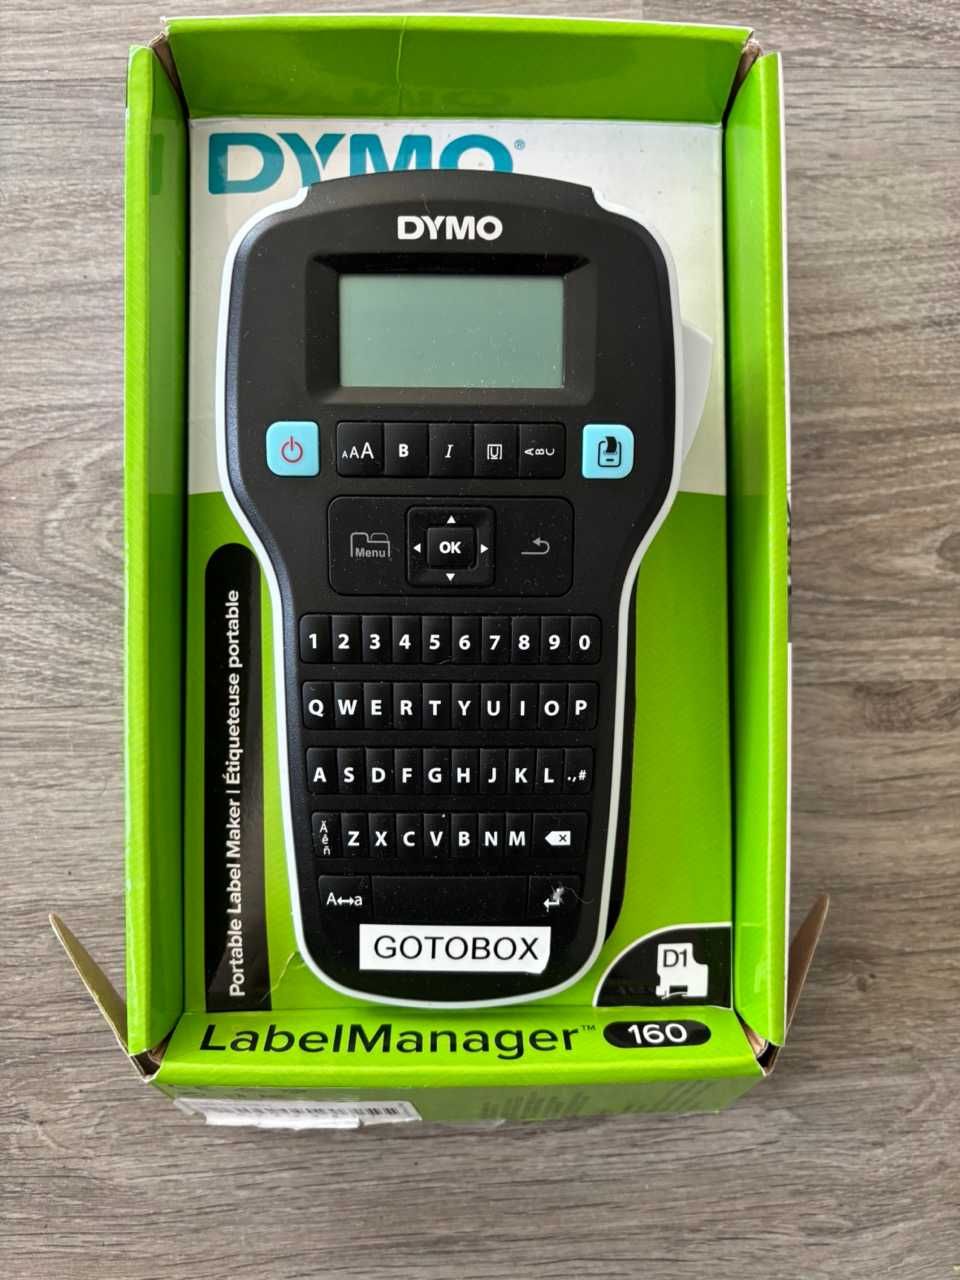 Dymo Label Manager 160 Novo